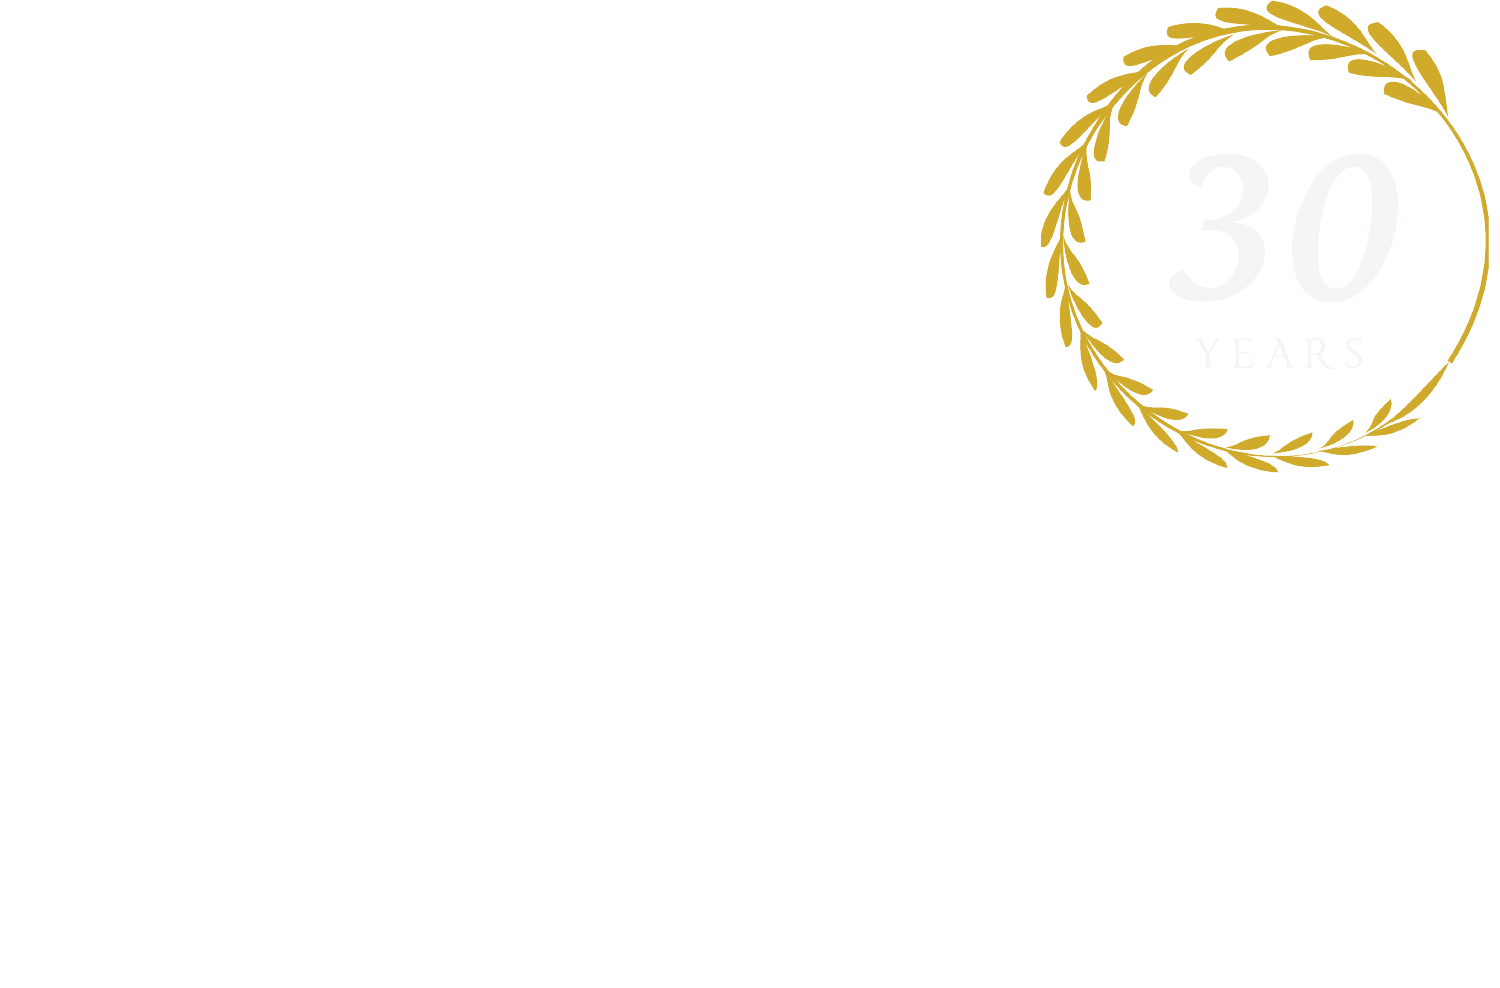 Boston Yacht Charters